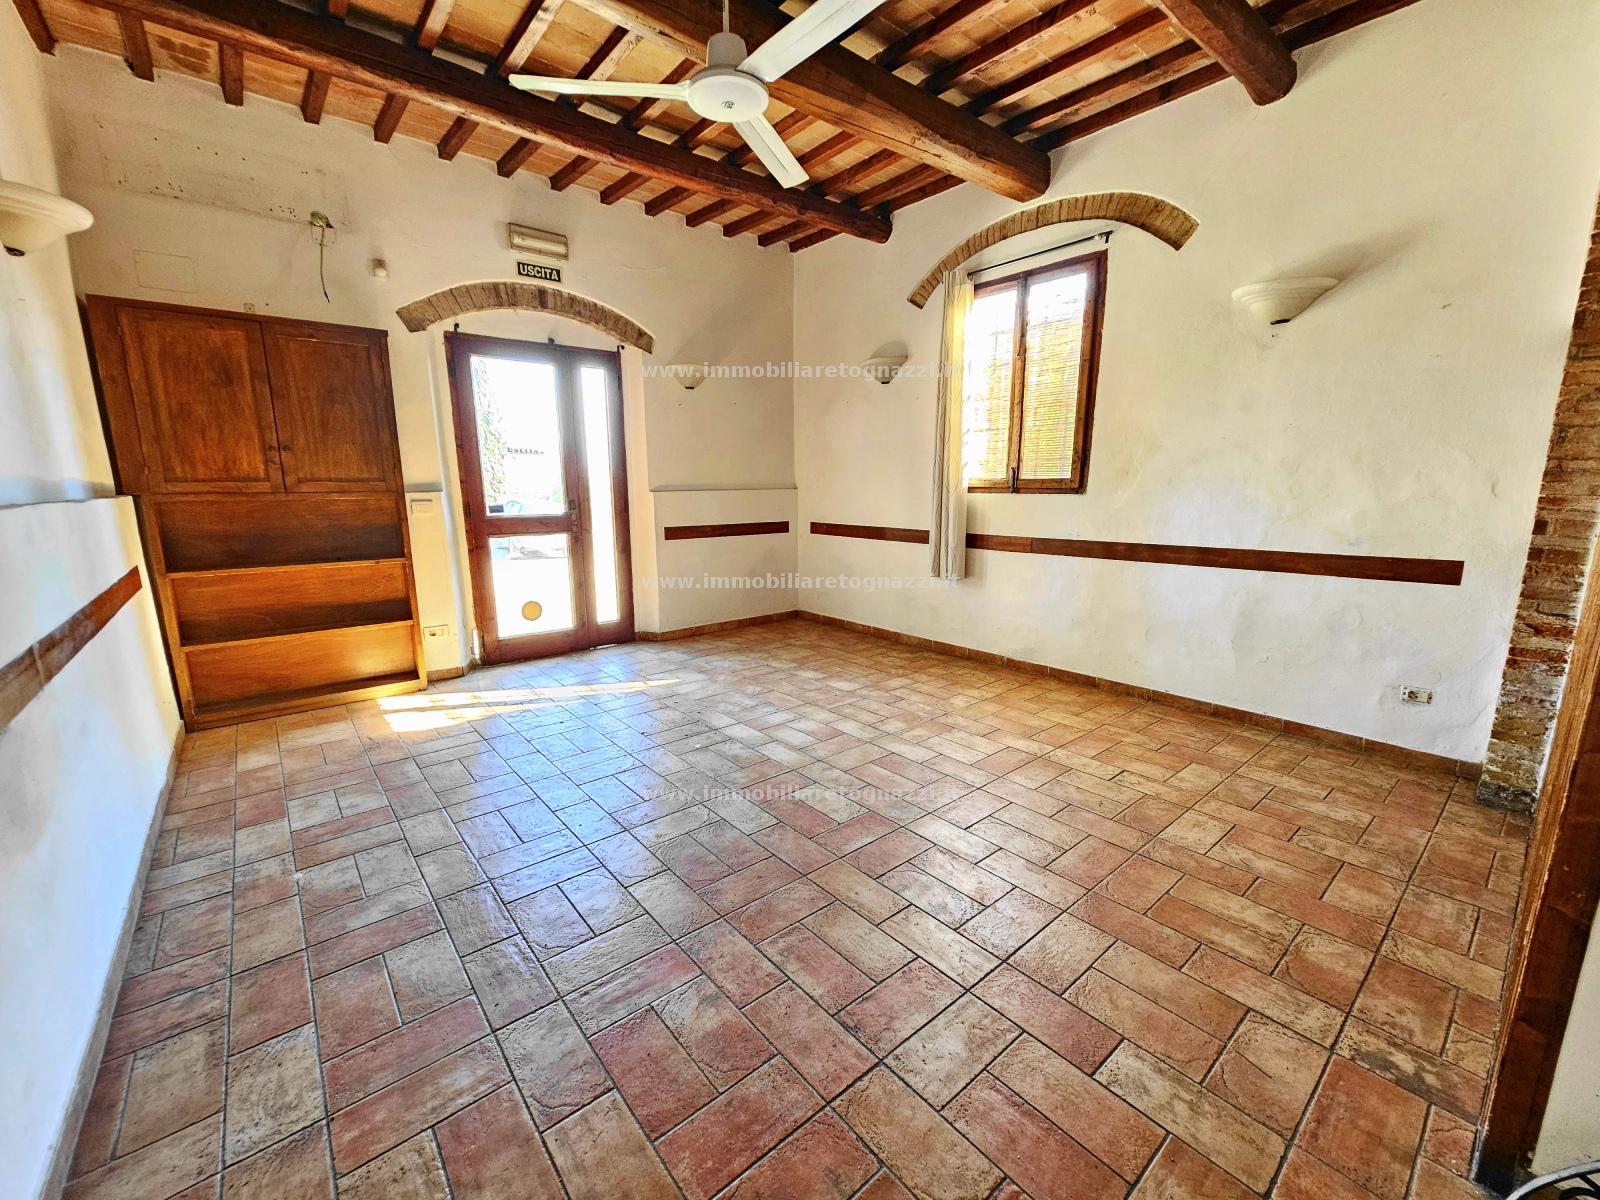 Appartamento in vendita a Montespertoli, 4 locali, prezzo € 110.000 | PortaleAgenzieImmobiliari.it